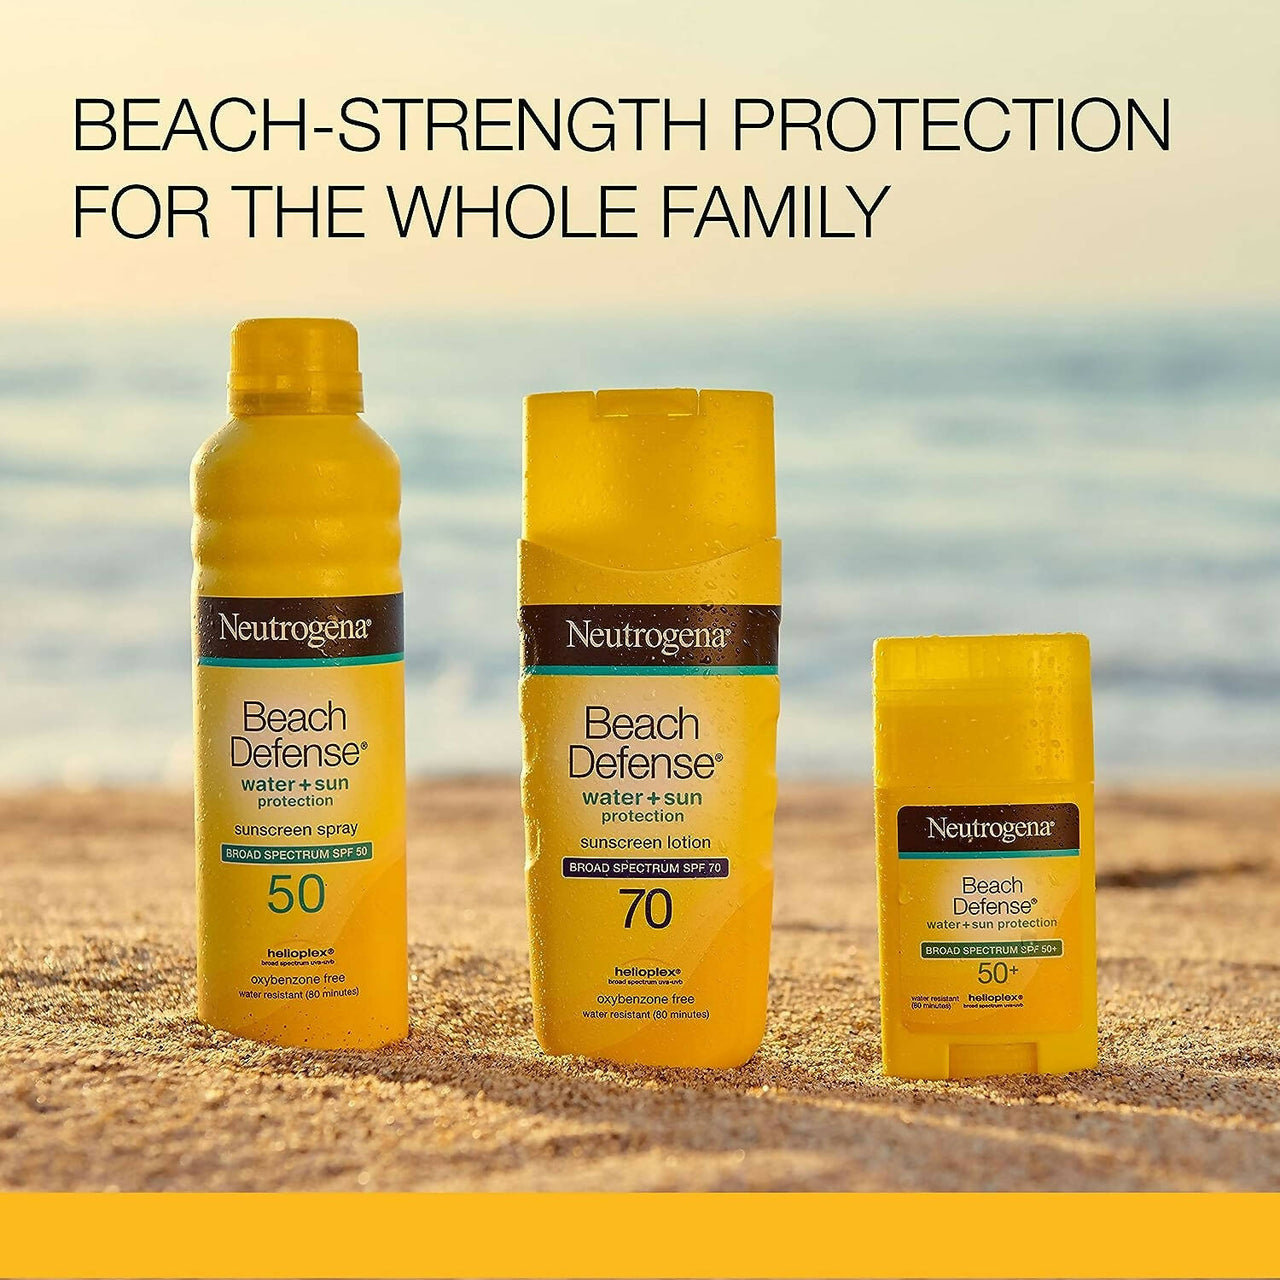 Neutrogena Beach Defense Sunscreen Stick Broad Spectrum SPF 50+ - Distacart